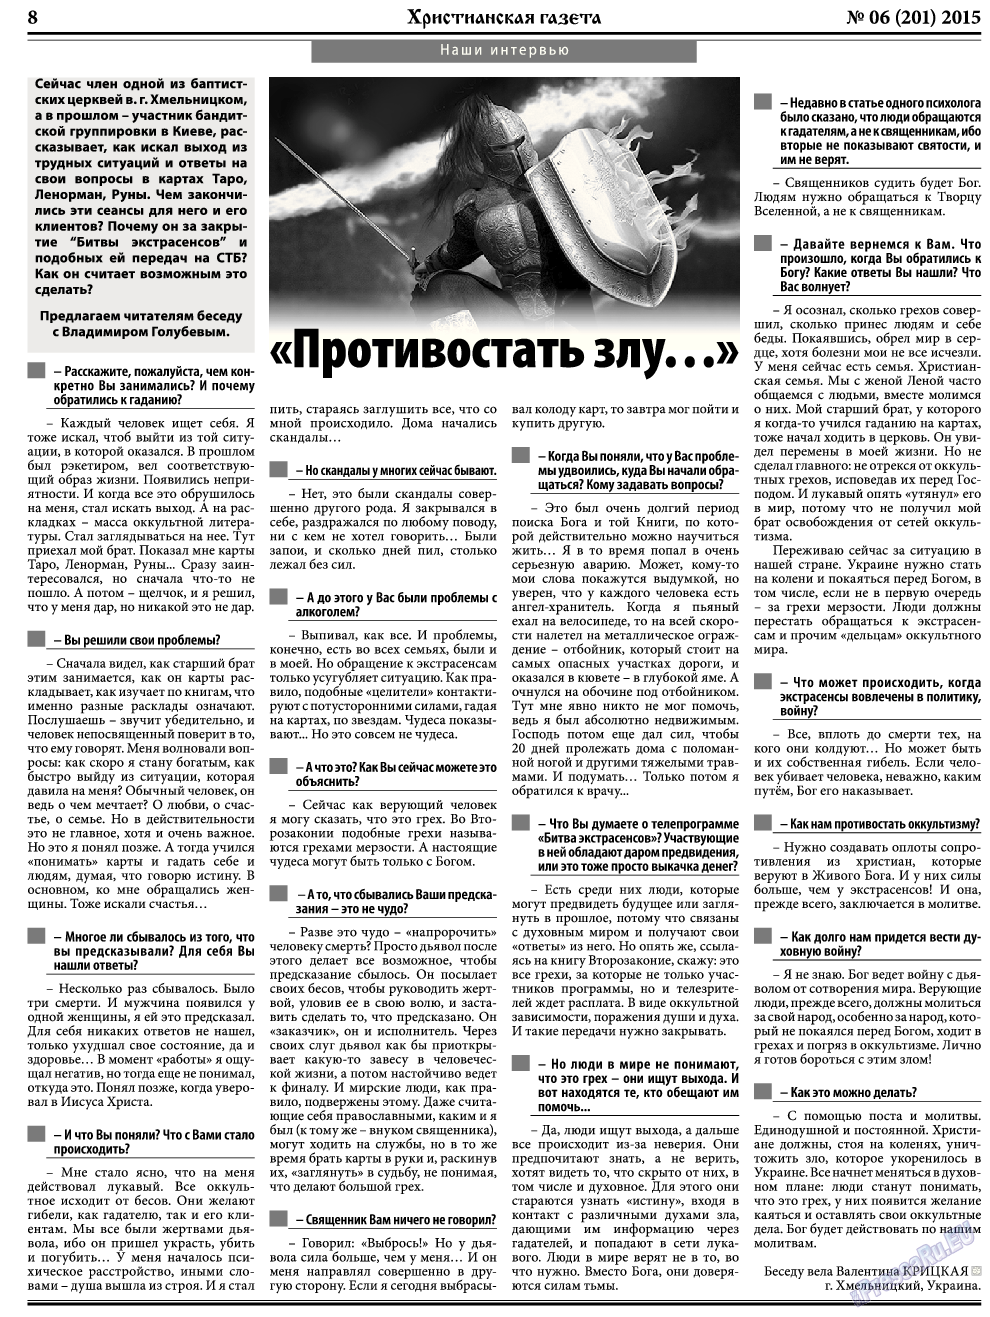 Христианская газета, газета. 2015 №6 стр.8